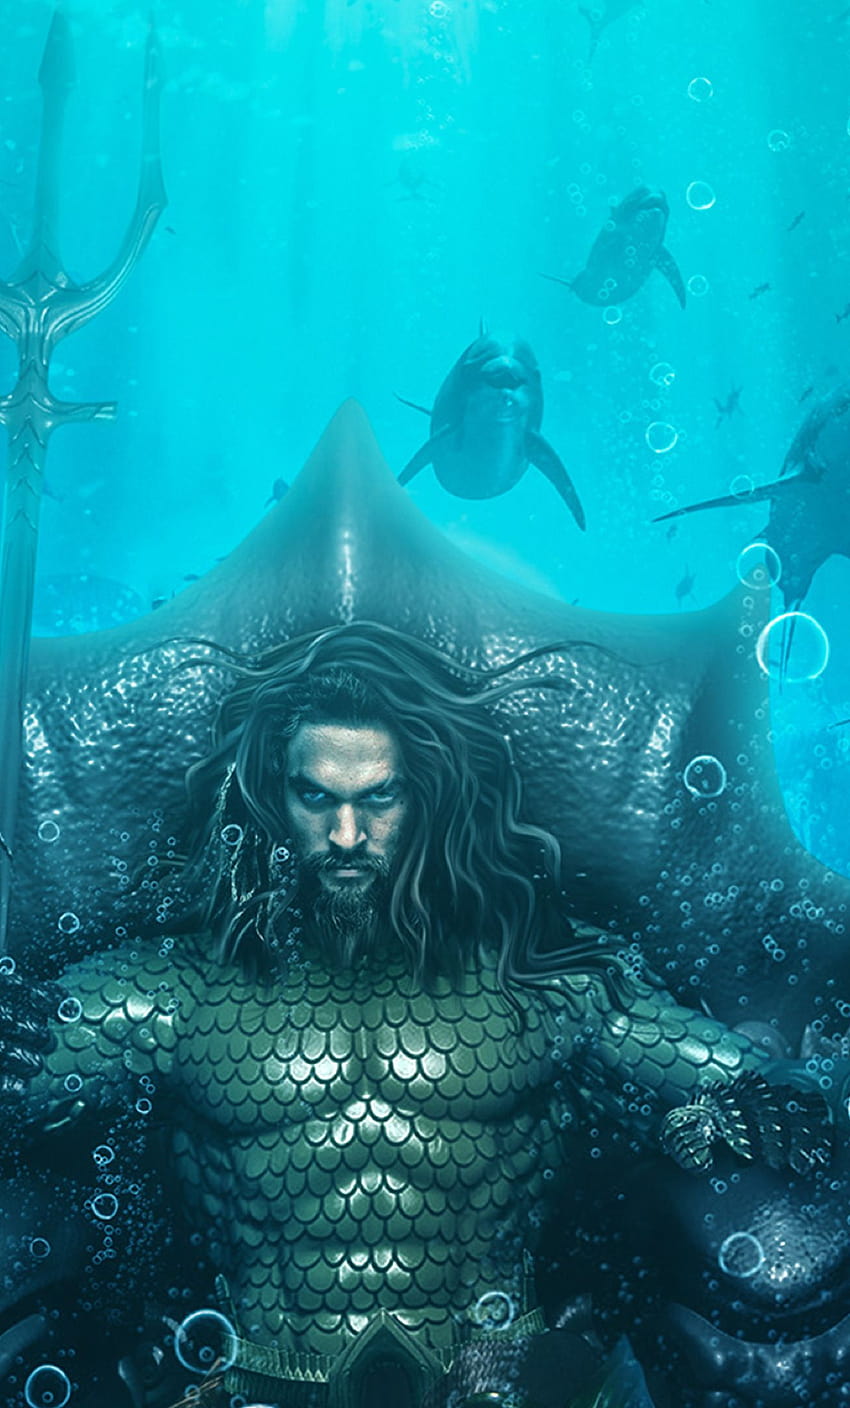 1280x2120 Aquaman King of Atlantis iPhone 6 plus HD phone wallpaper